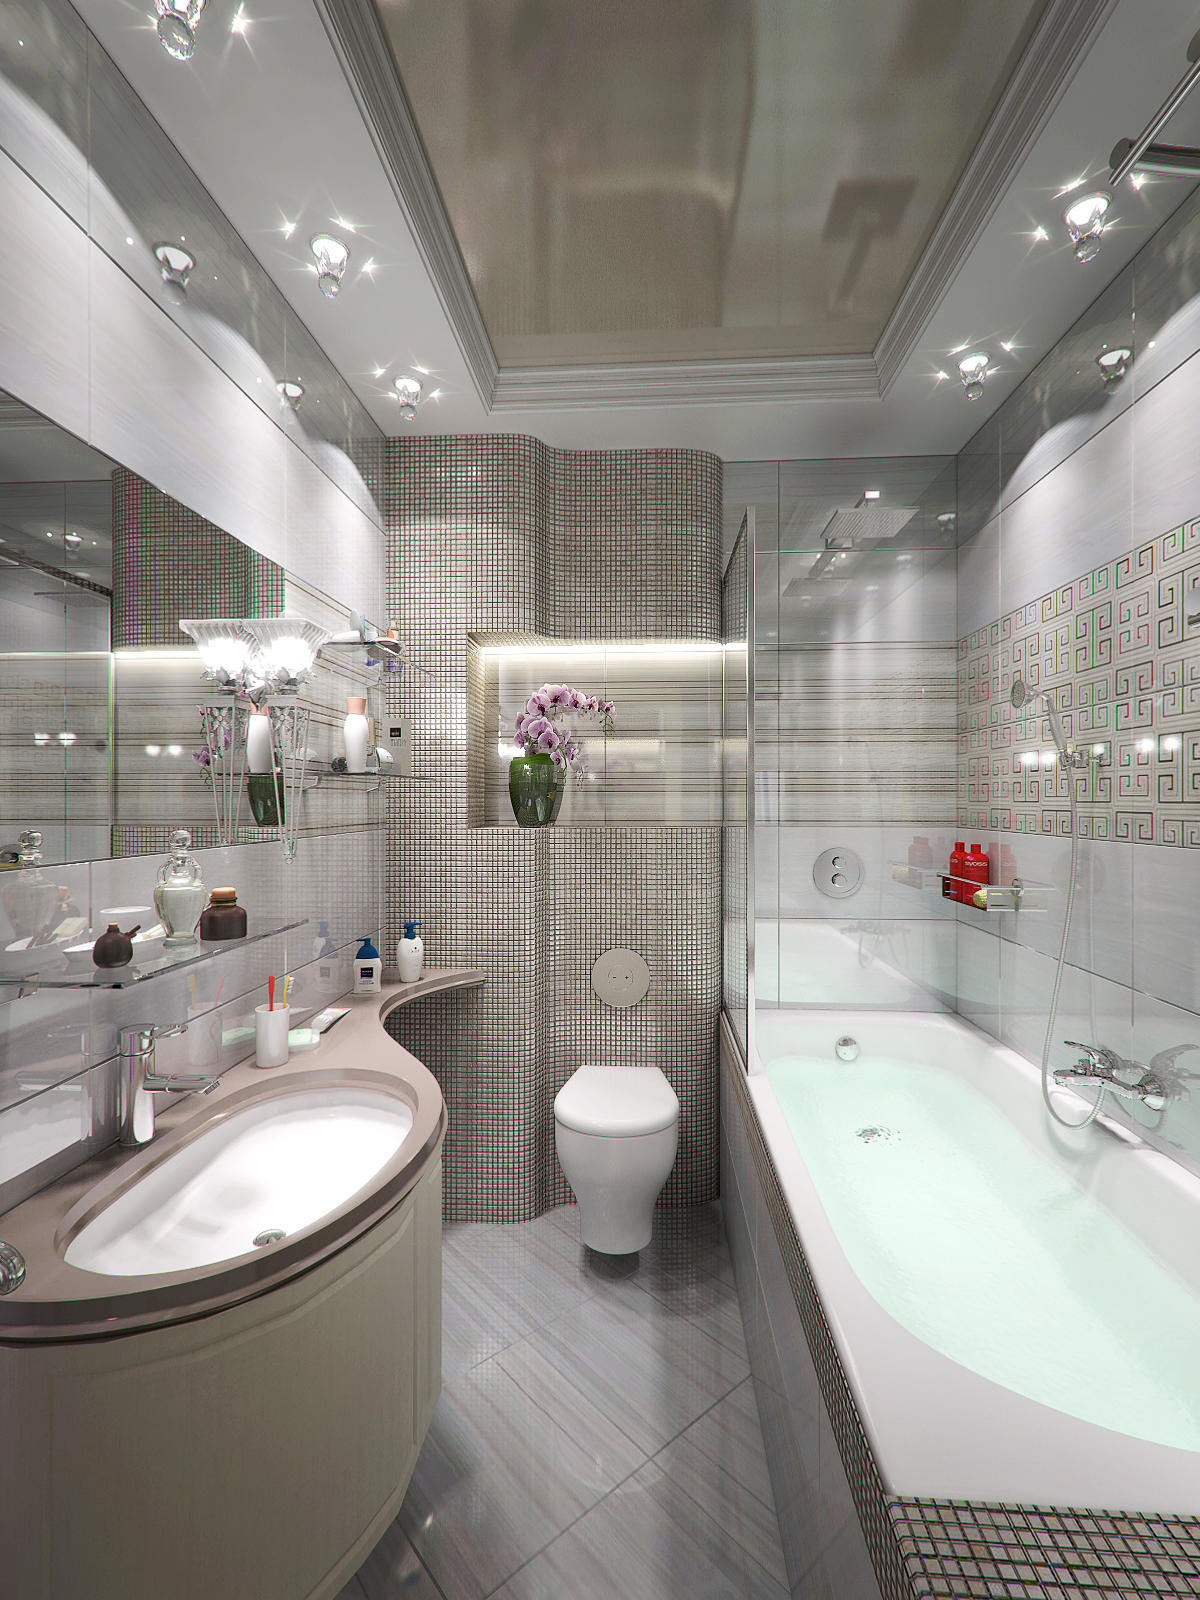 Процесс монтажа подвесного потолка для небольшого помещения, например, ванной комнаты, не занимает очень много времени и выполняется по стандартной технологии